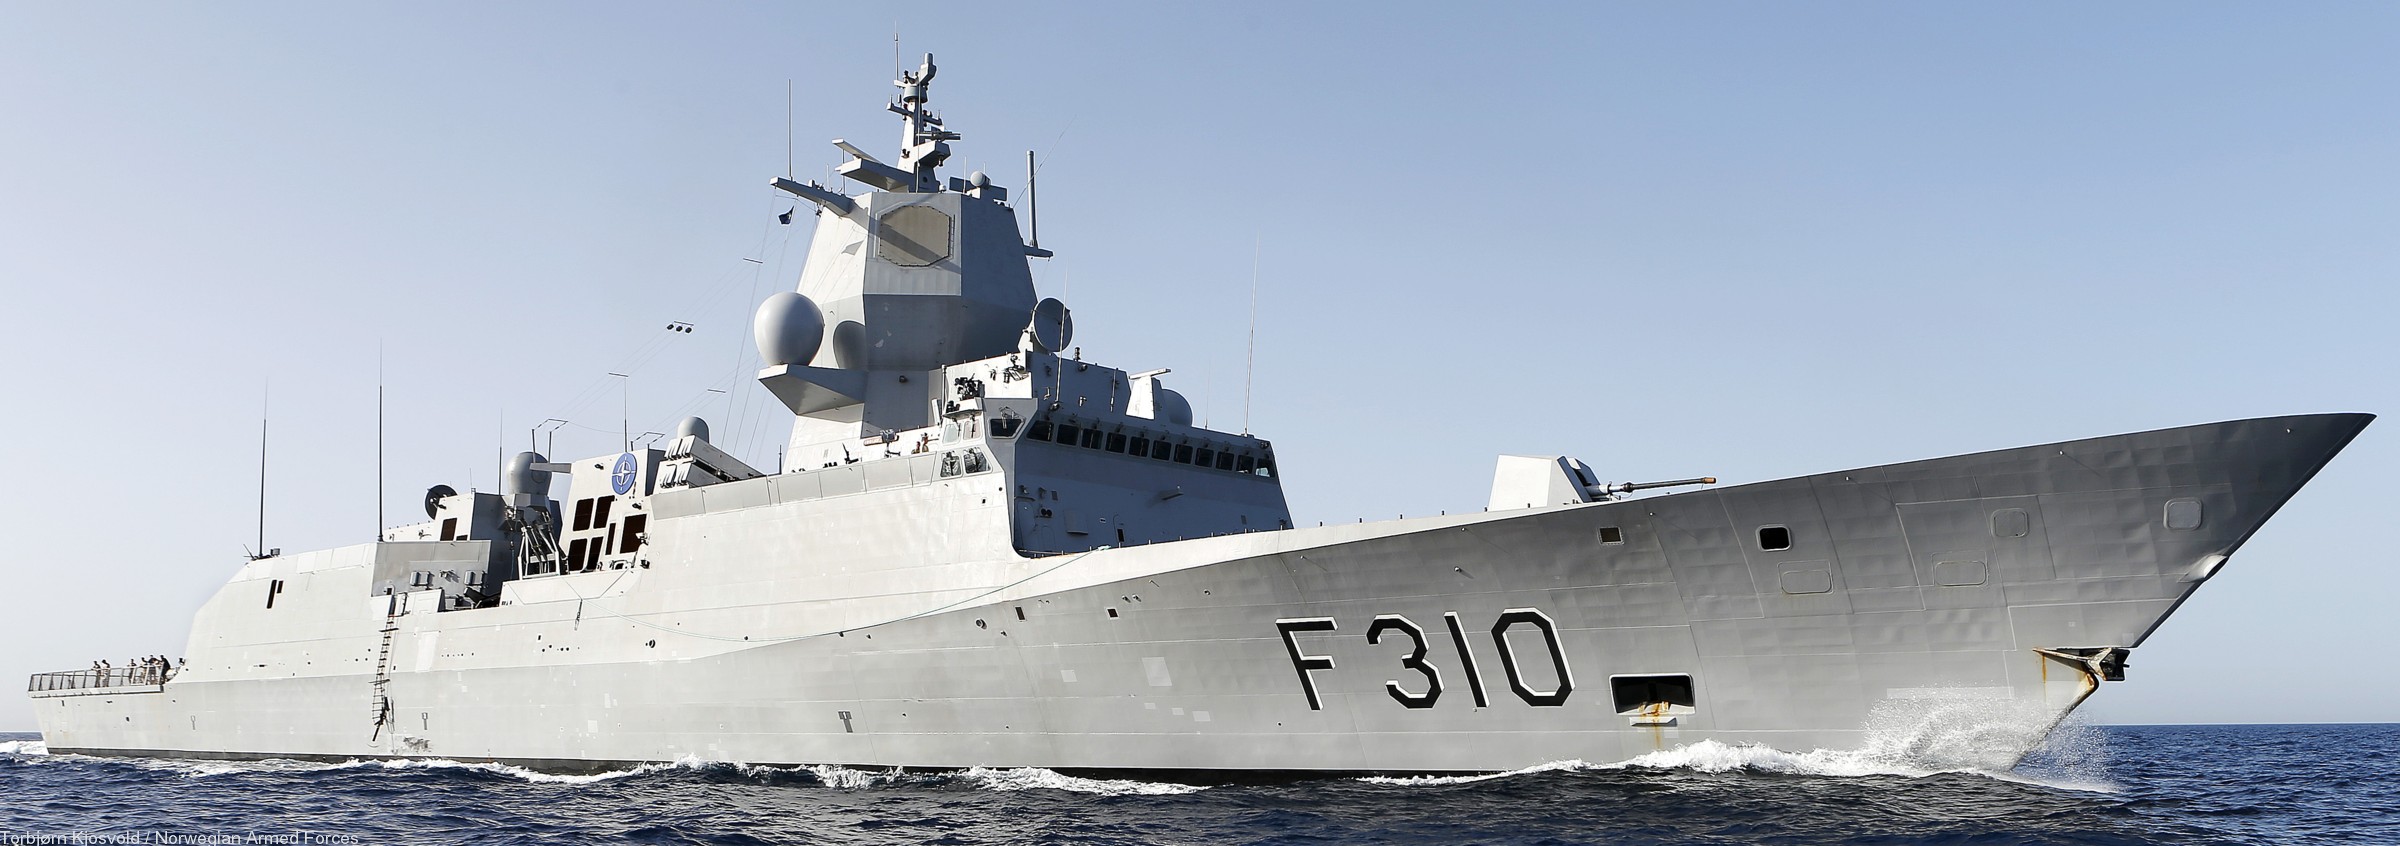 f-310 fridtjof nansen hnoms knm frigate royal norwegian navy sjoforsvaret 25